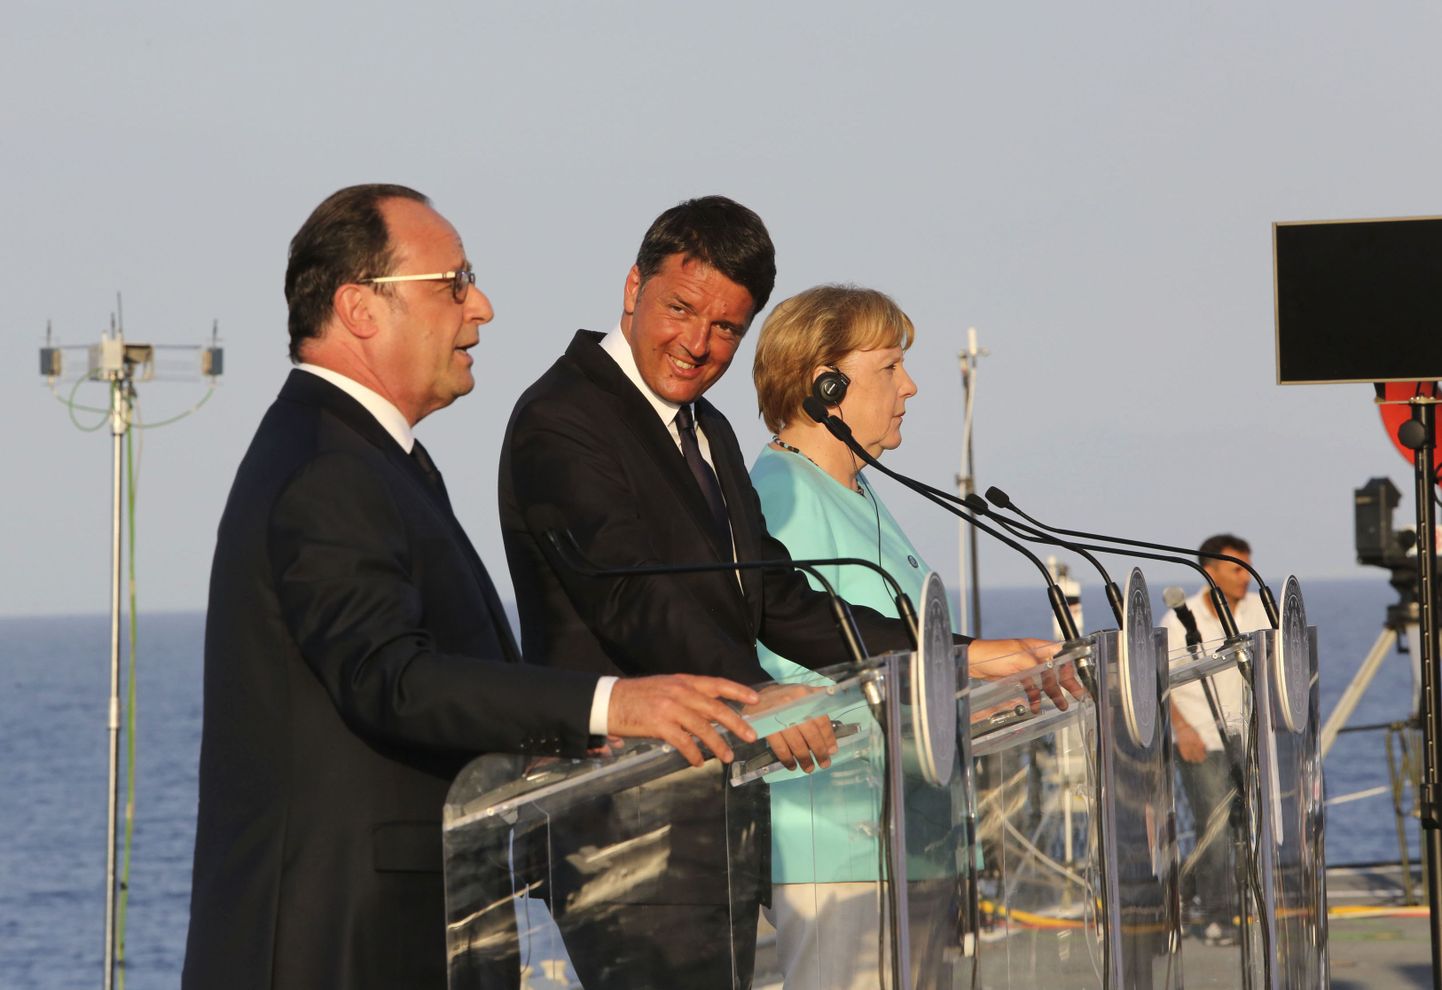 Prantsuse president François Hollande, Itaalia peaminister Matteo Renzi ja Saksa kantsler Angela Merkel esmaspäeval Itaalia lennukikandjal Giuseppe Garibaldi